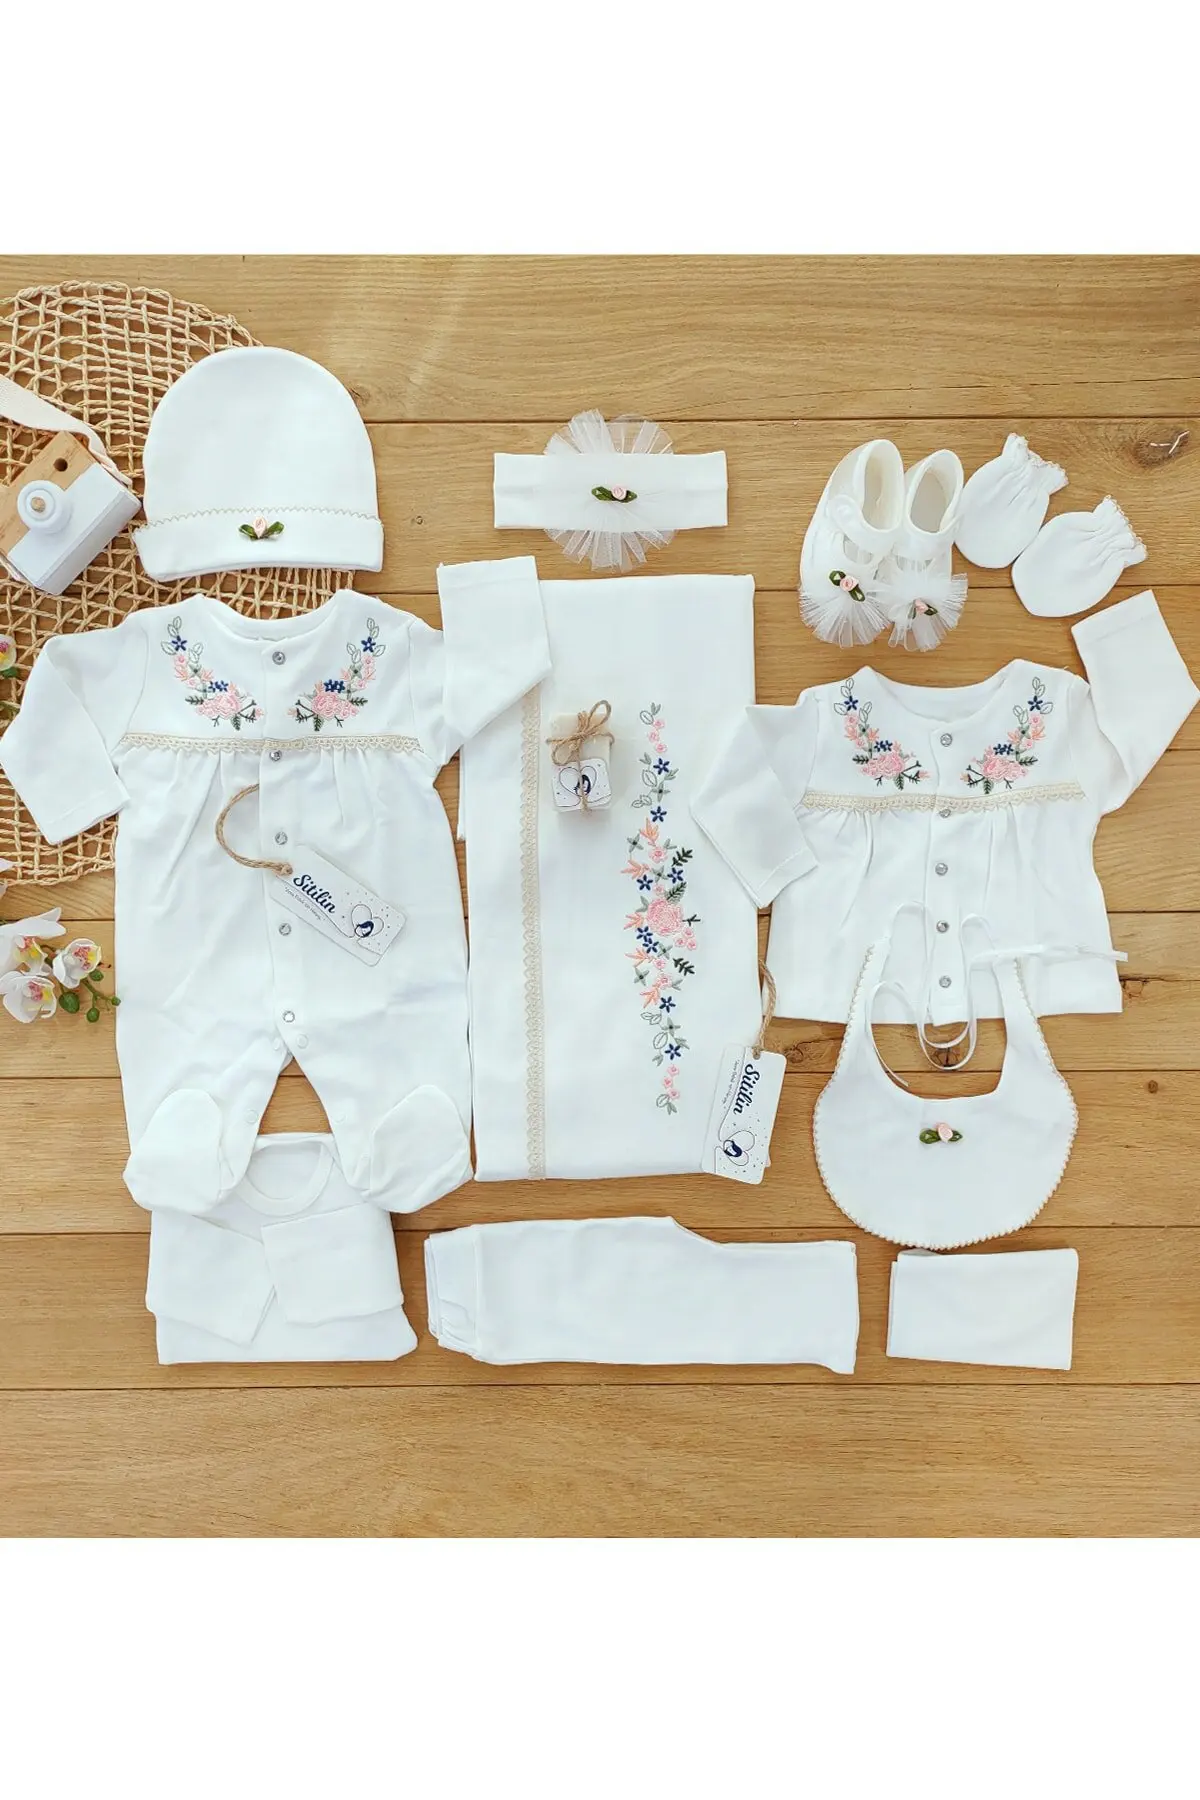 Baby Mädchen Ecru Natürliche Kreuz Stich Krankenhaus Outfit Neugeborenen Unterwäsche Set 0-3 Monate Komfortable Und Antiallergenic